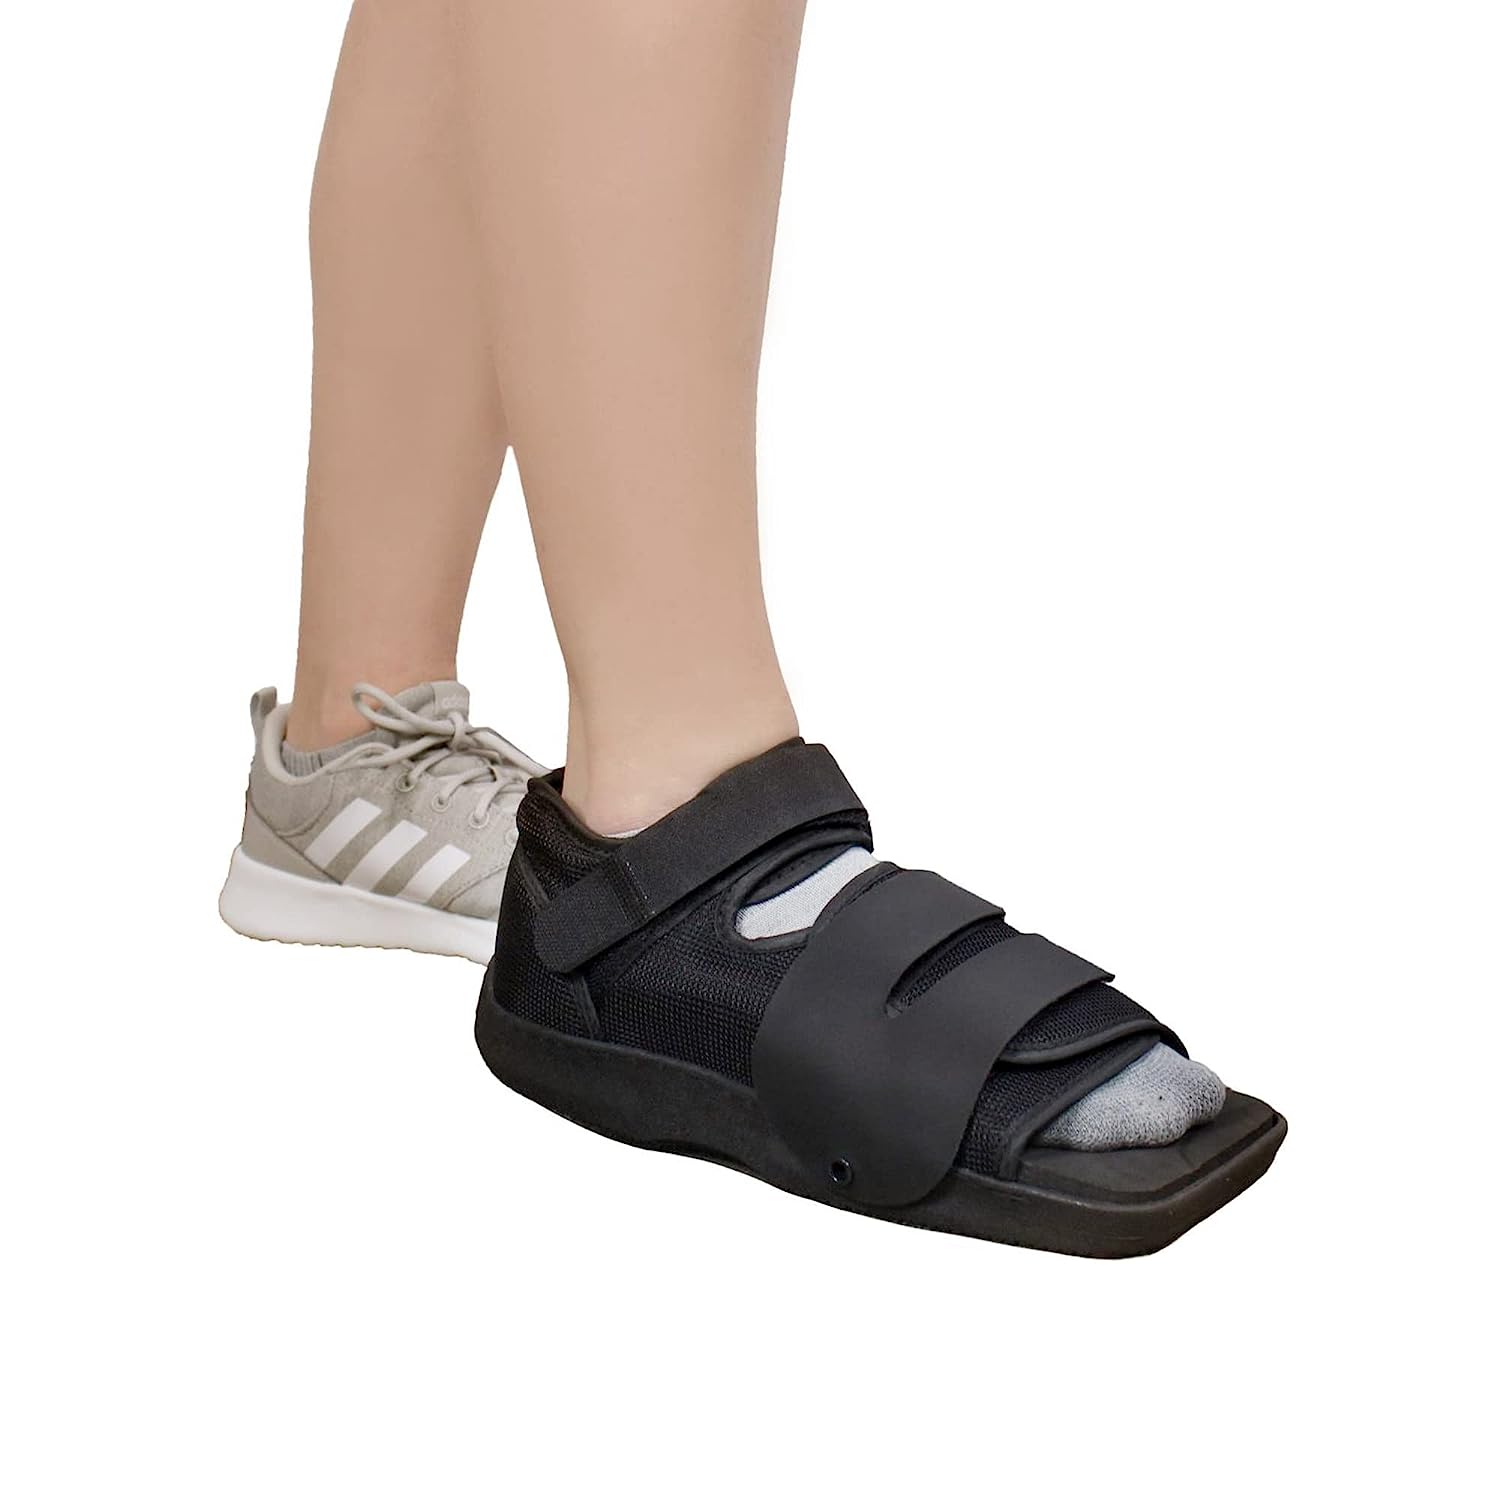 Brace Align Squared Toe Post Op Shoe - Adjustable [...]